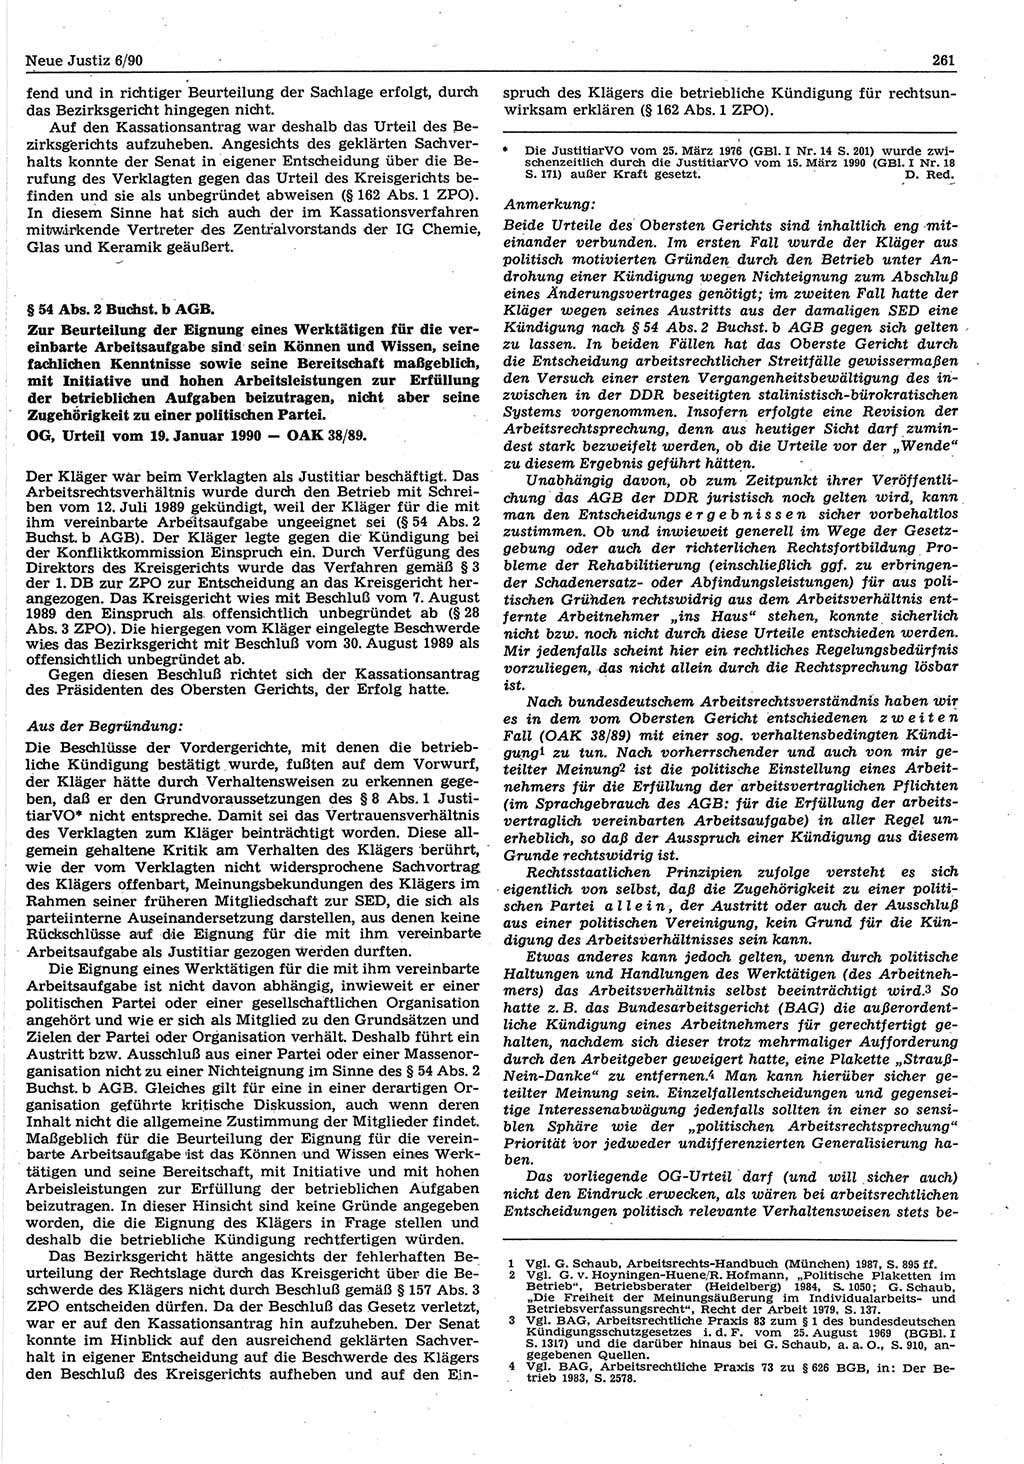 Neue Justiz (NJ), Zeitschrift für Rechtsetzung und Rechtsanwendung [Deutsche Demokratische Republik (DDR)], 44. Jahrgang 1990, Seite 261 (NJ DDR 1990, S. 261)